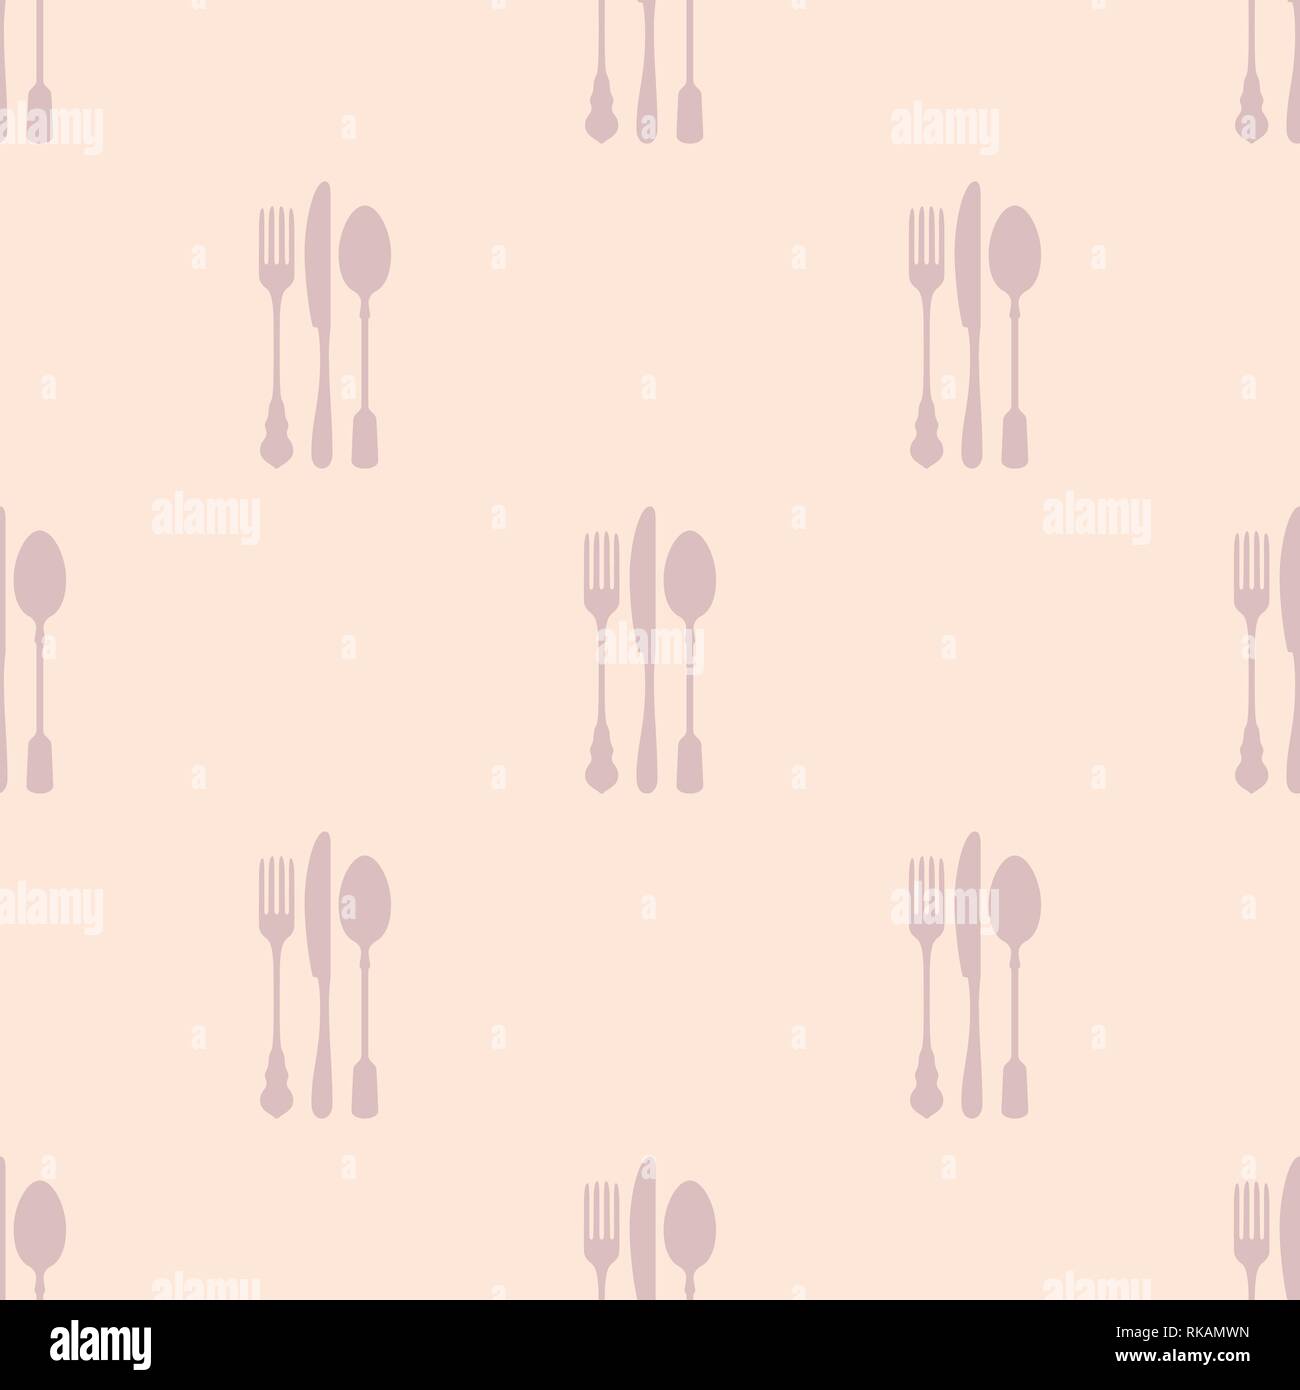 Restaurant menu nahtlose Muster. Vector Hintergrund. Pastell sanften Farben. Gabel, Messer und Löffel Silhouetten. Stock Vektor